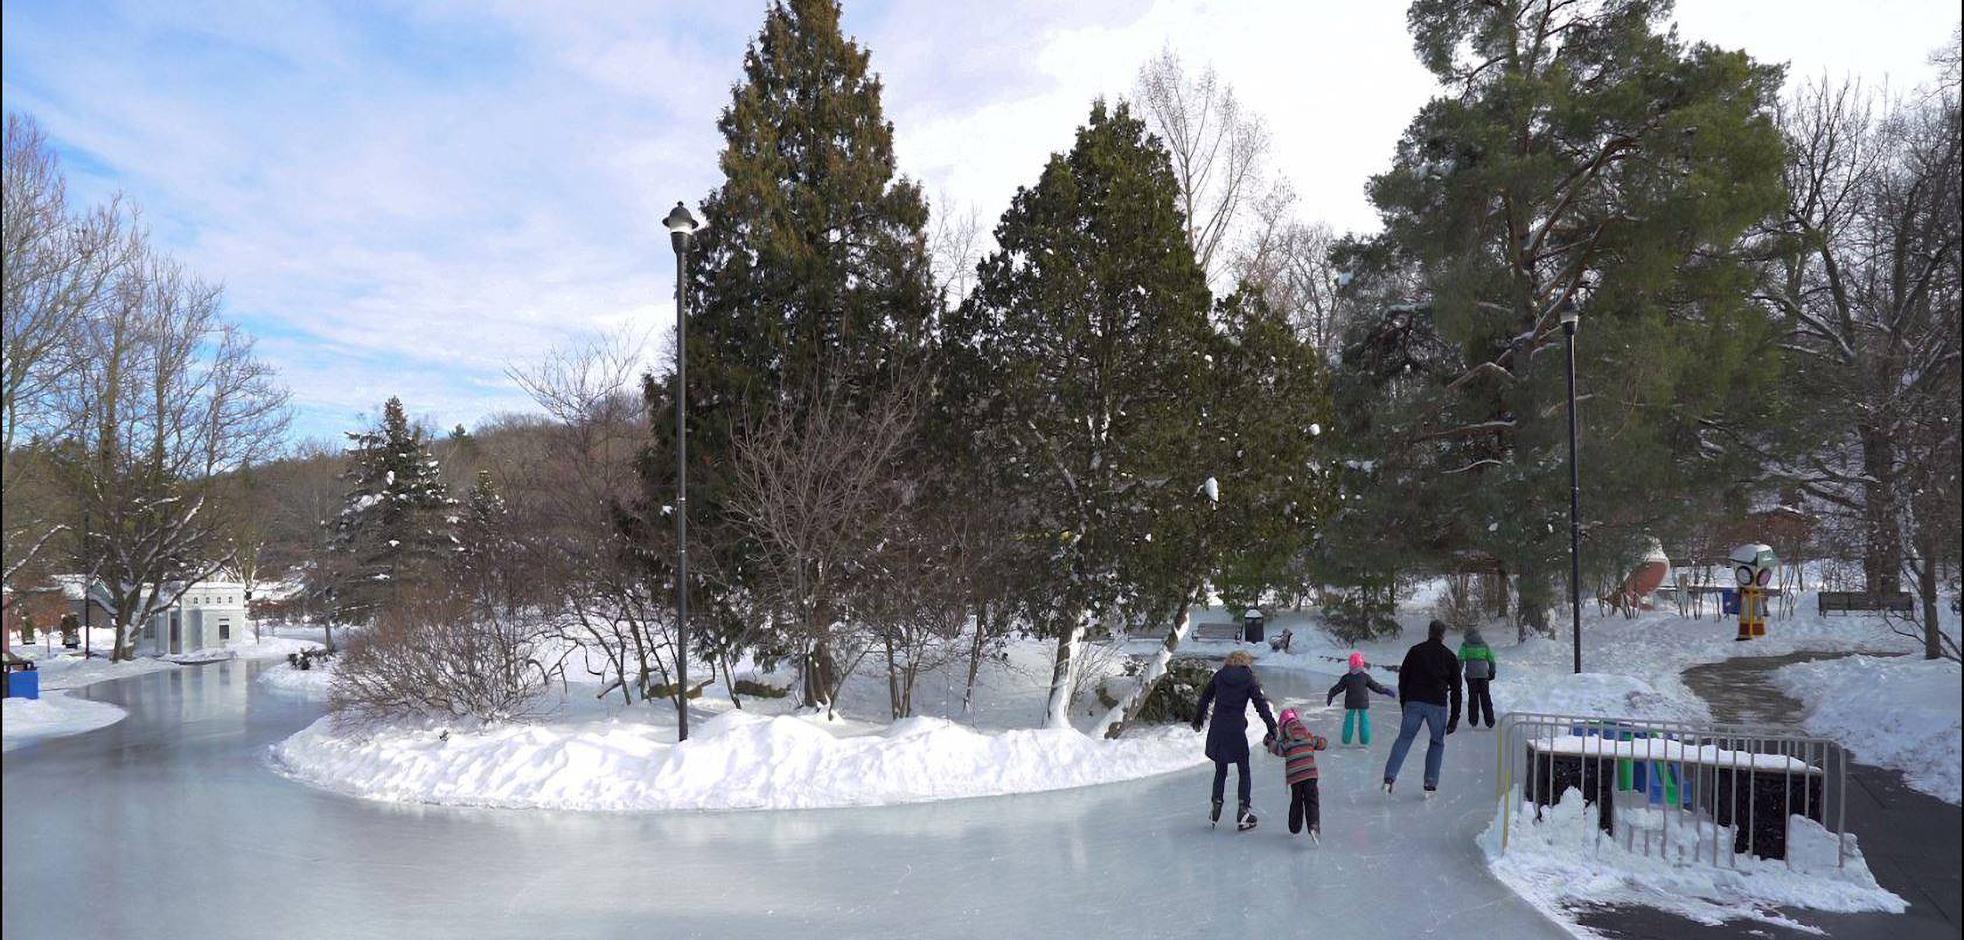 A family skating outdoors at Storybook Gardens in London, Ontario